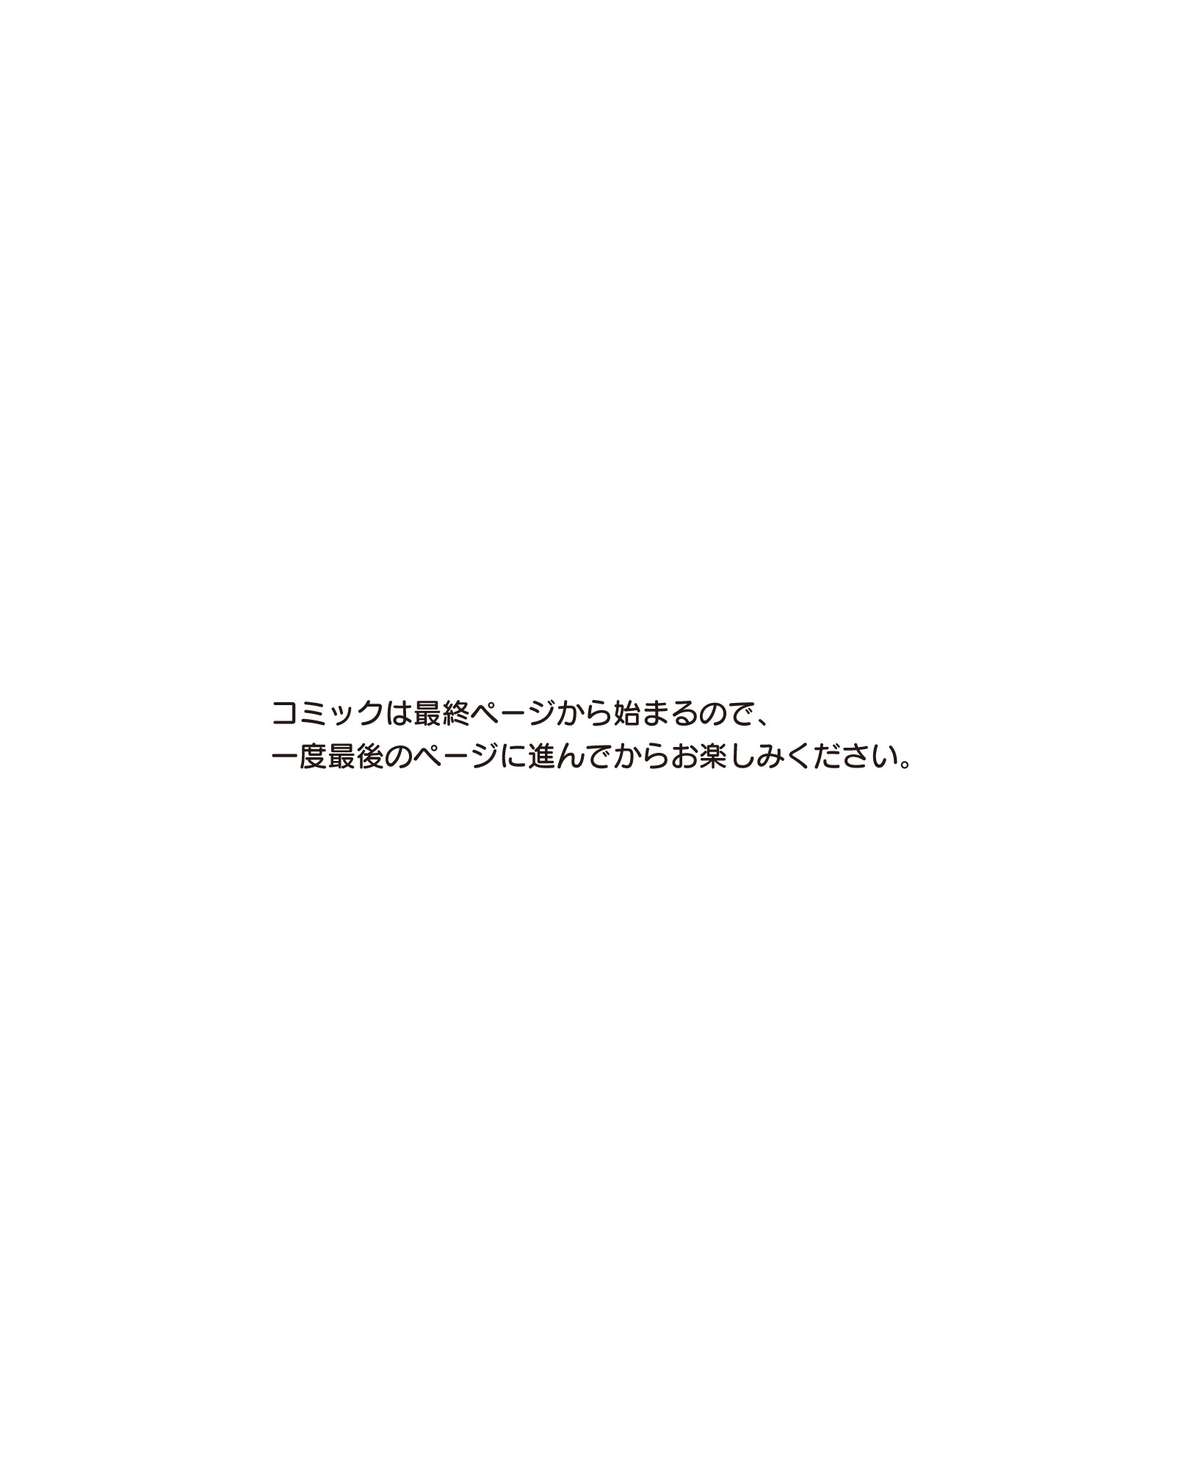 電撃姫 2015年2月号